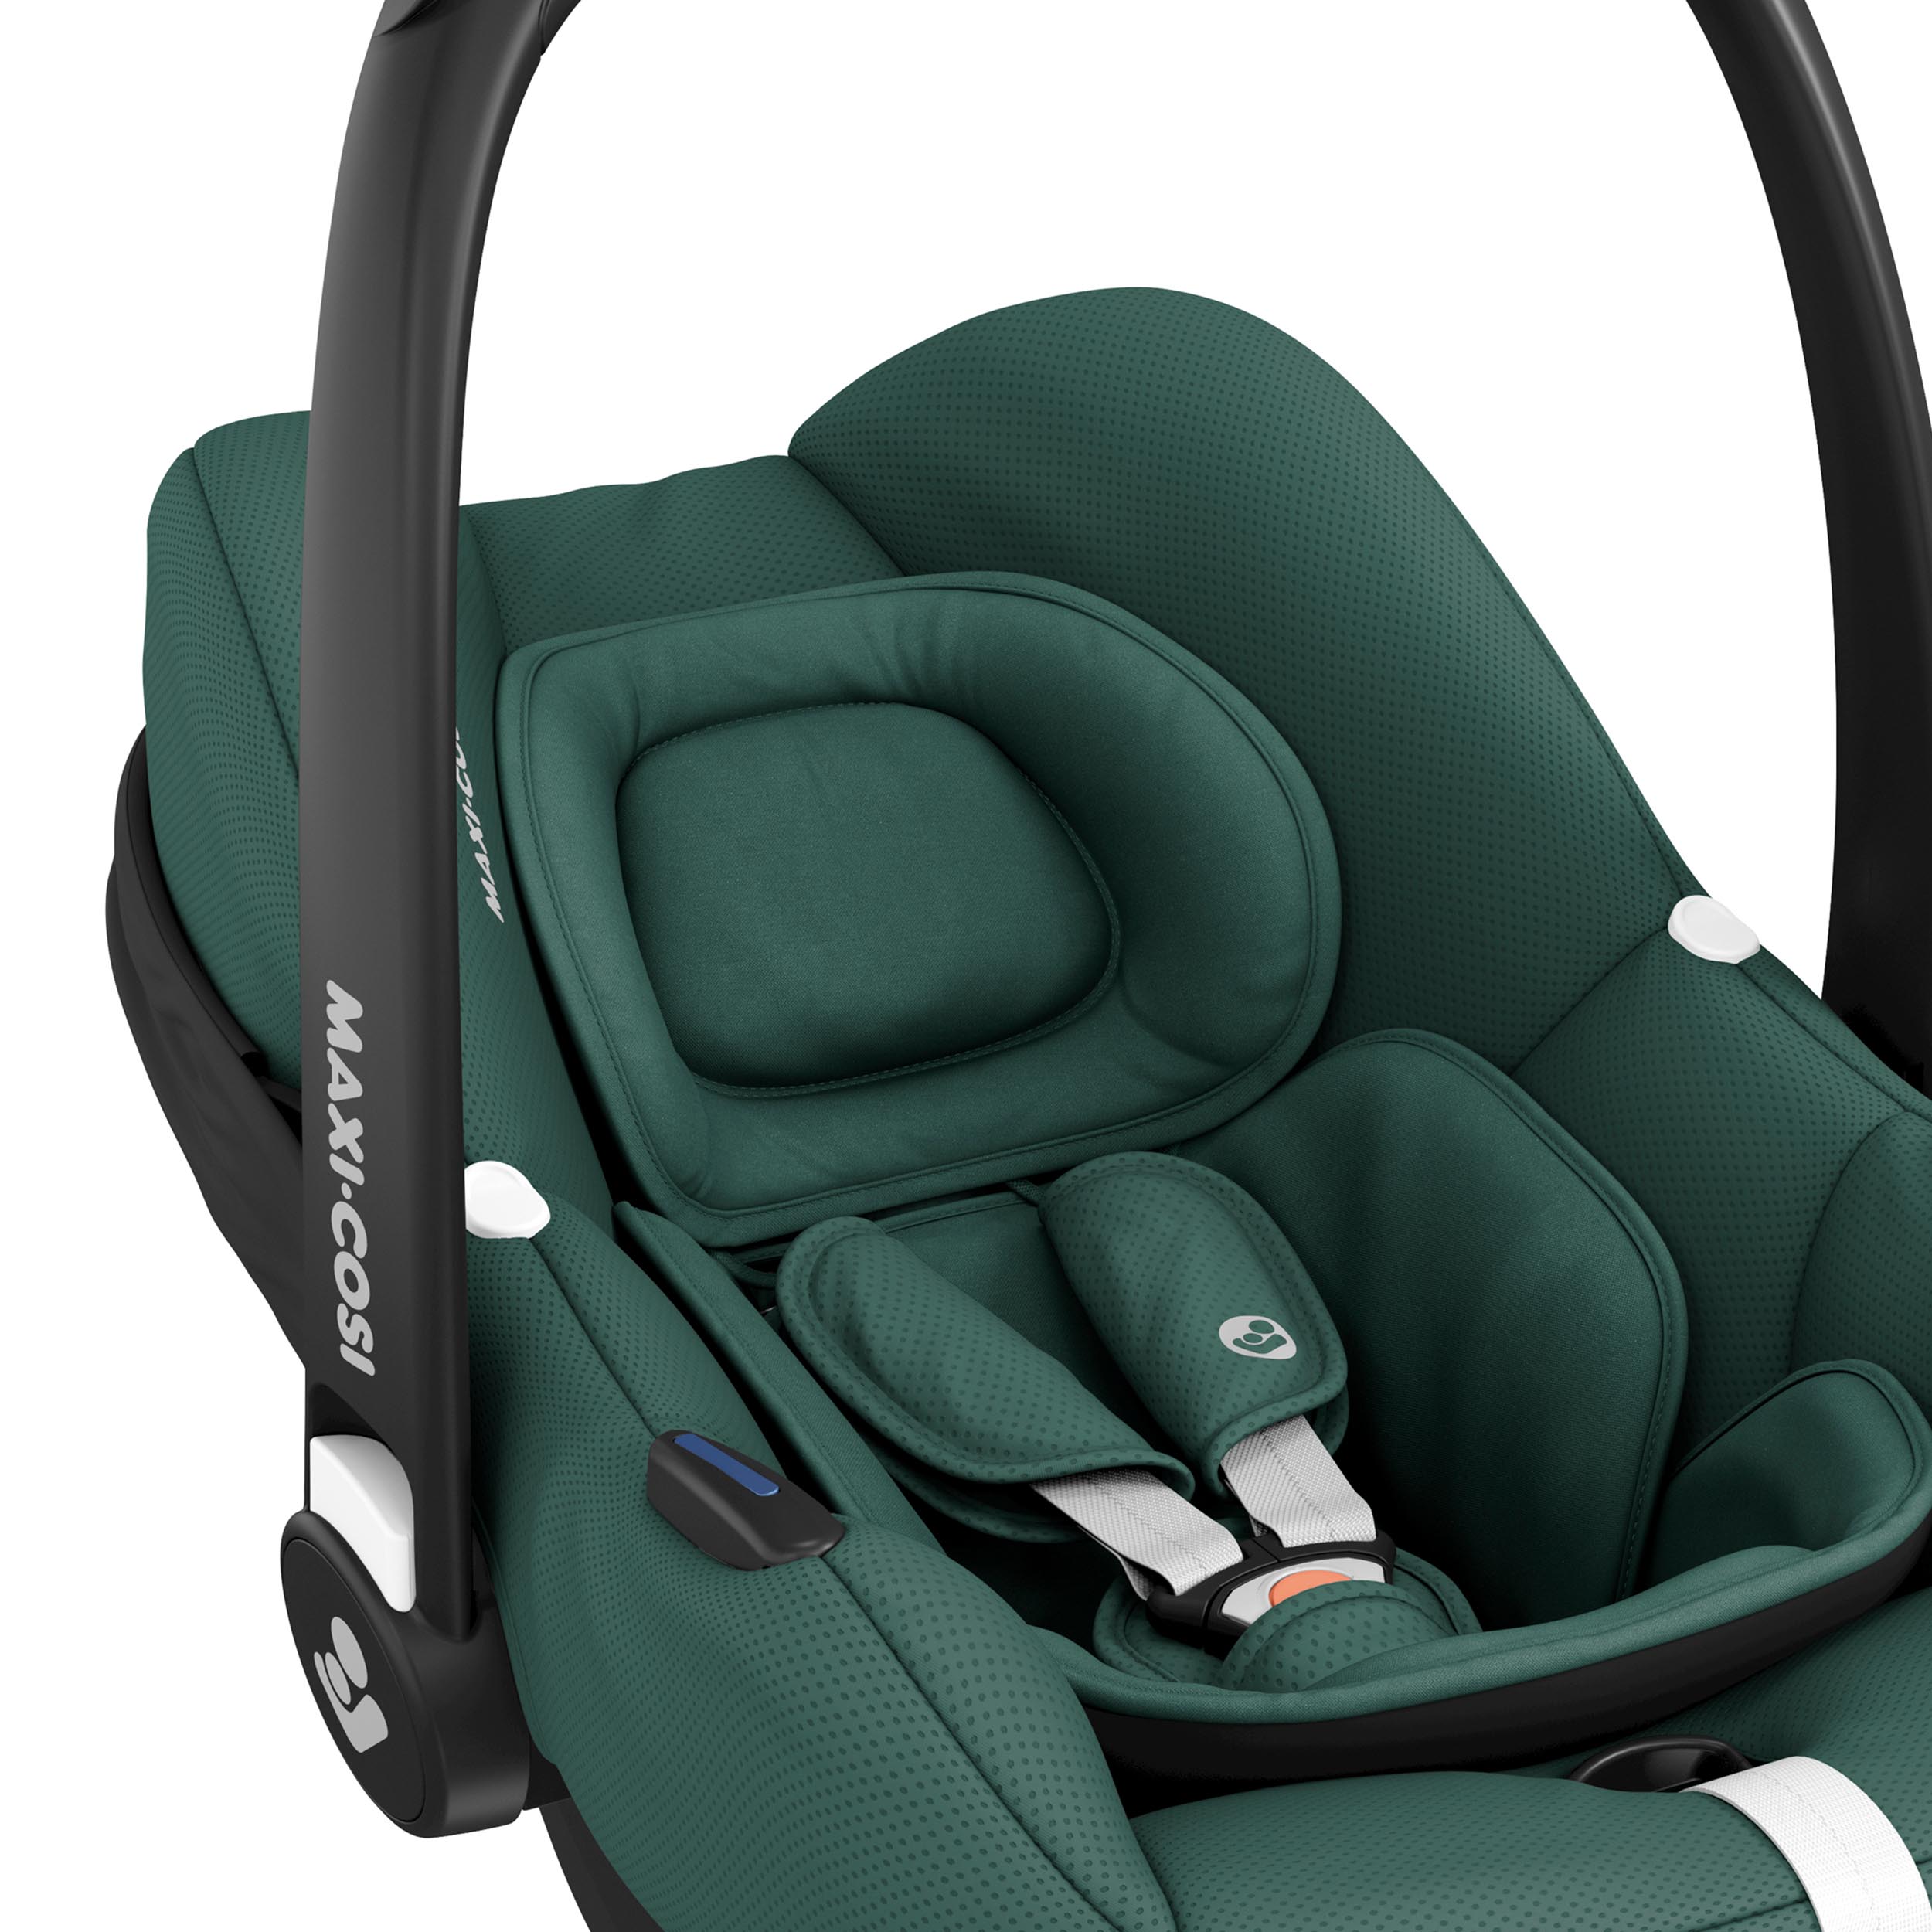 Sonnenverdeck Sonnendach für Maxi Cosi Cabriofix Babyschale Autositz Sicherung 